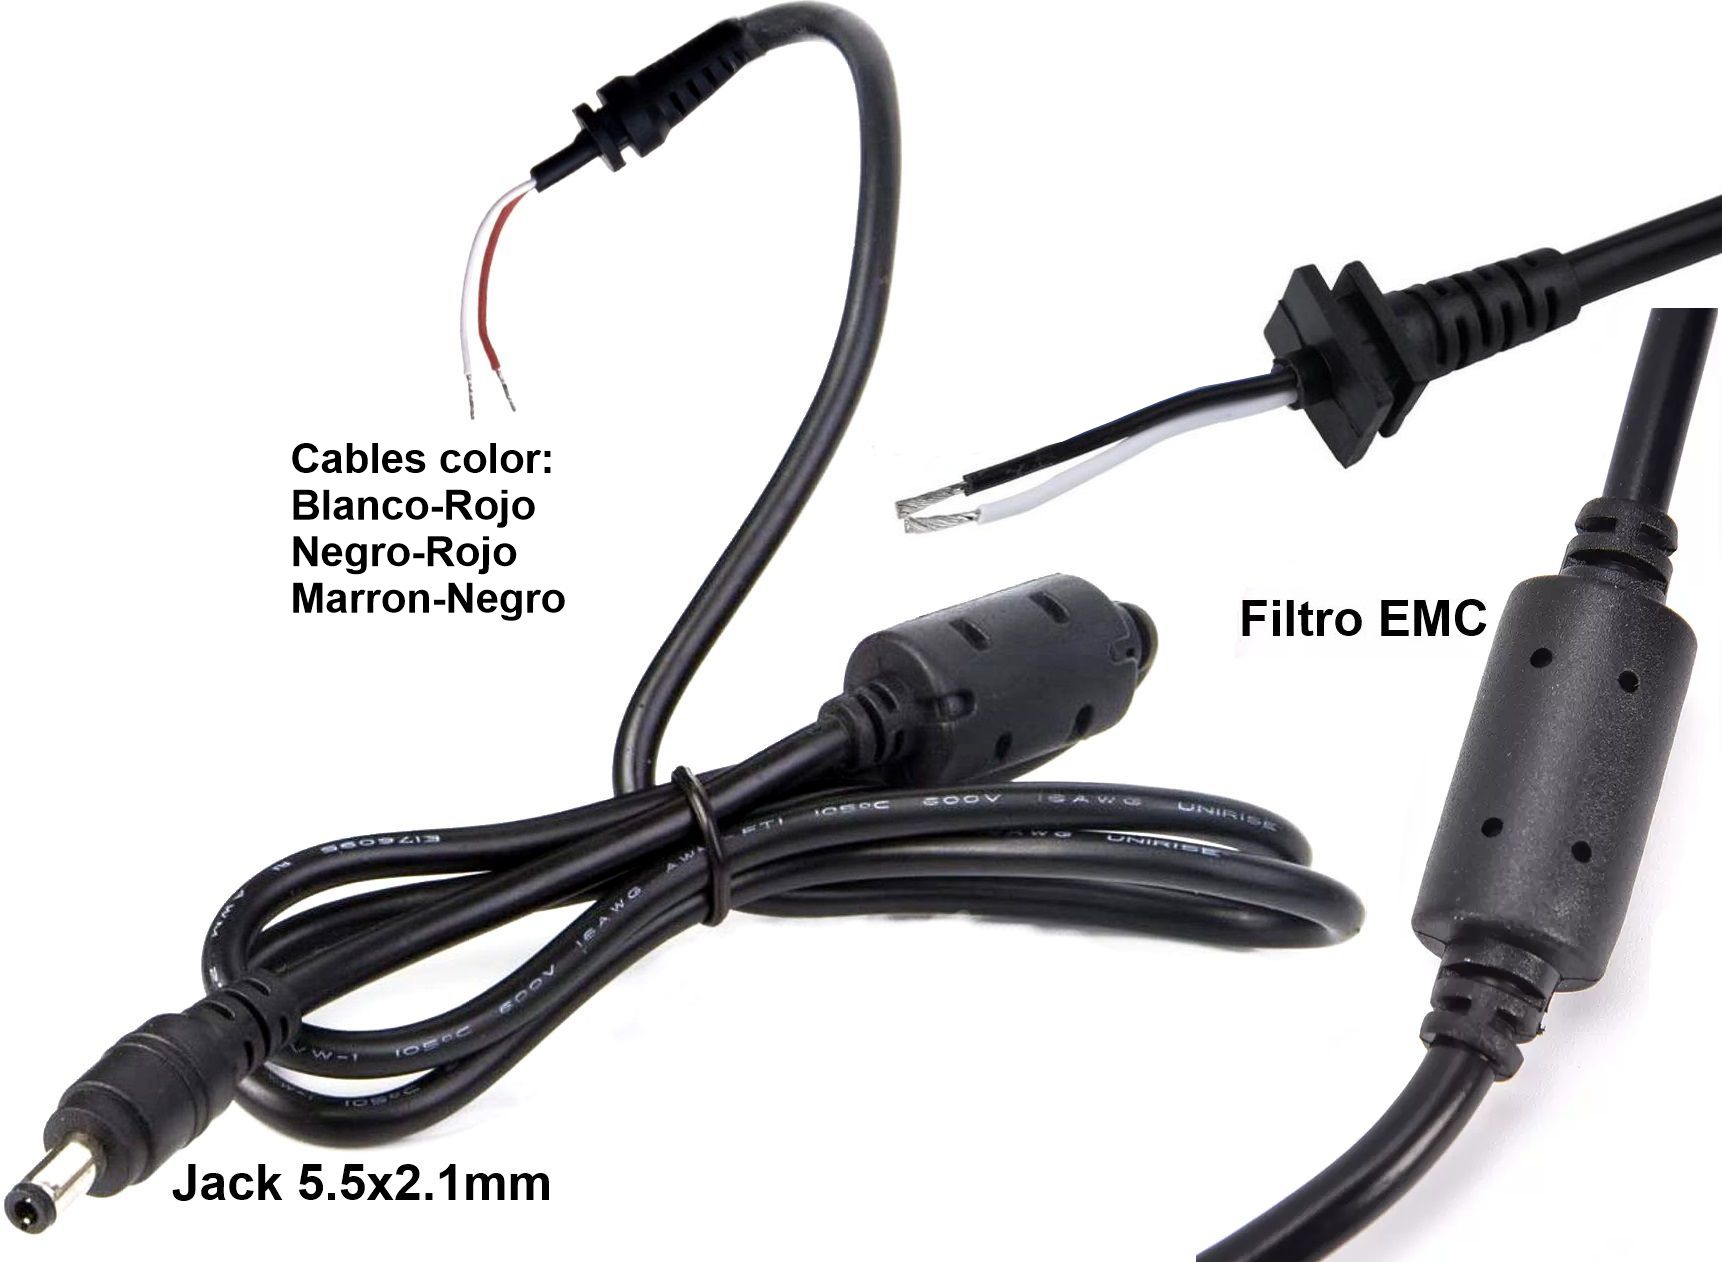 Conector Jack 5.5x2.1mm con Cable y pasacable y Filtro